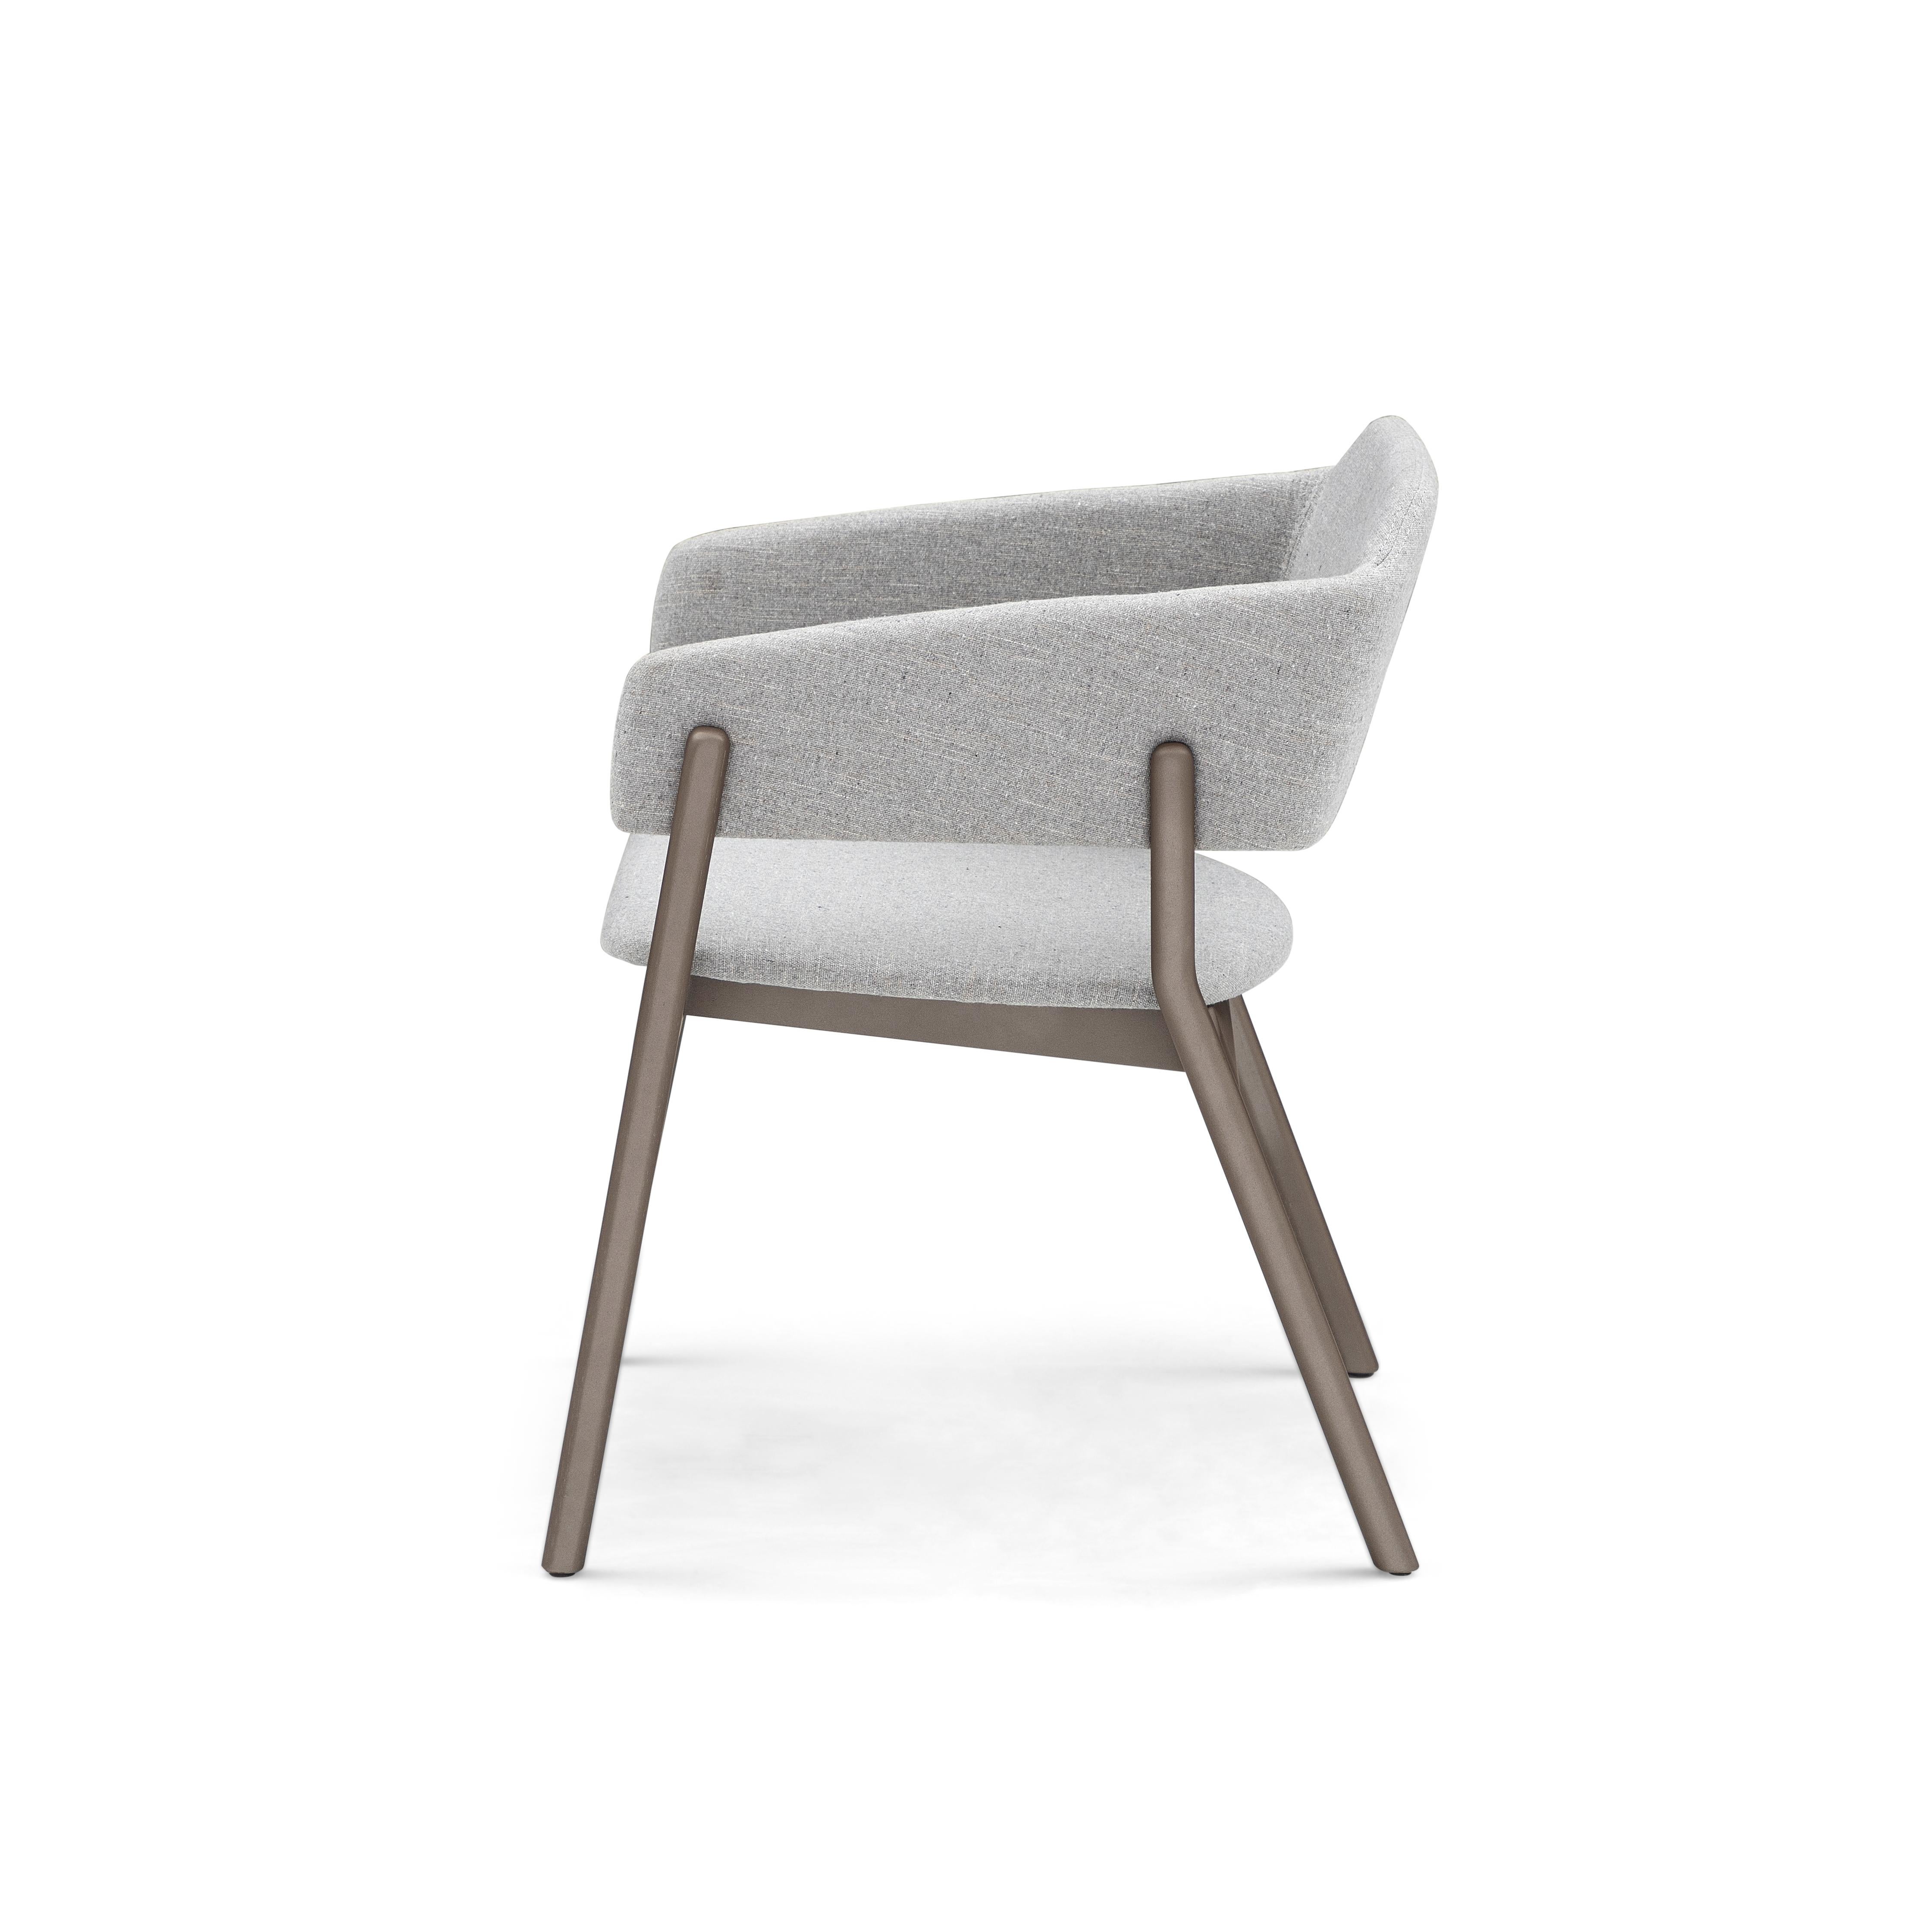 Notre équipe Uultis a créé cette magnifique chaise de salle à manger Stuzi pour décorer votre belle table de salle à manger avec un beau tissu gris et une finition en bois chocolat ou marron. Cette chaise a un beau design simple mais élégant qui va